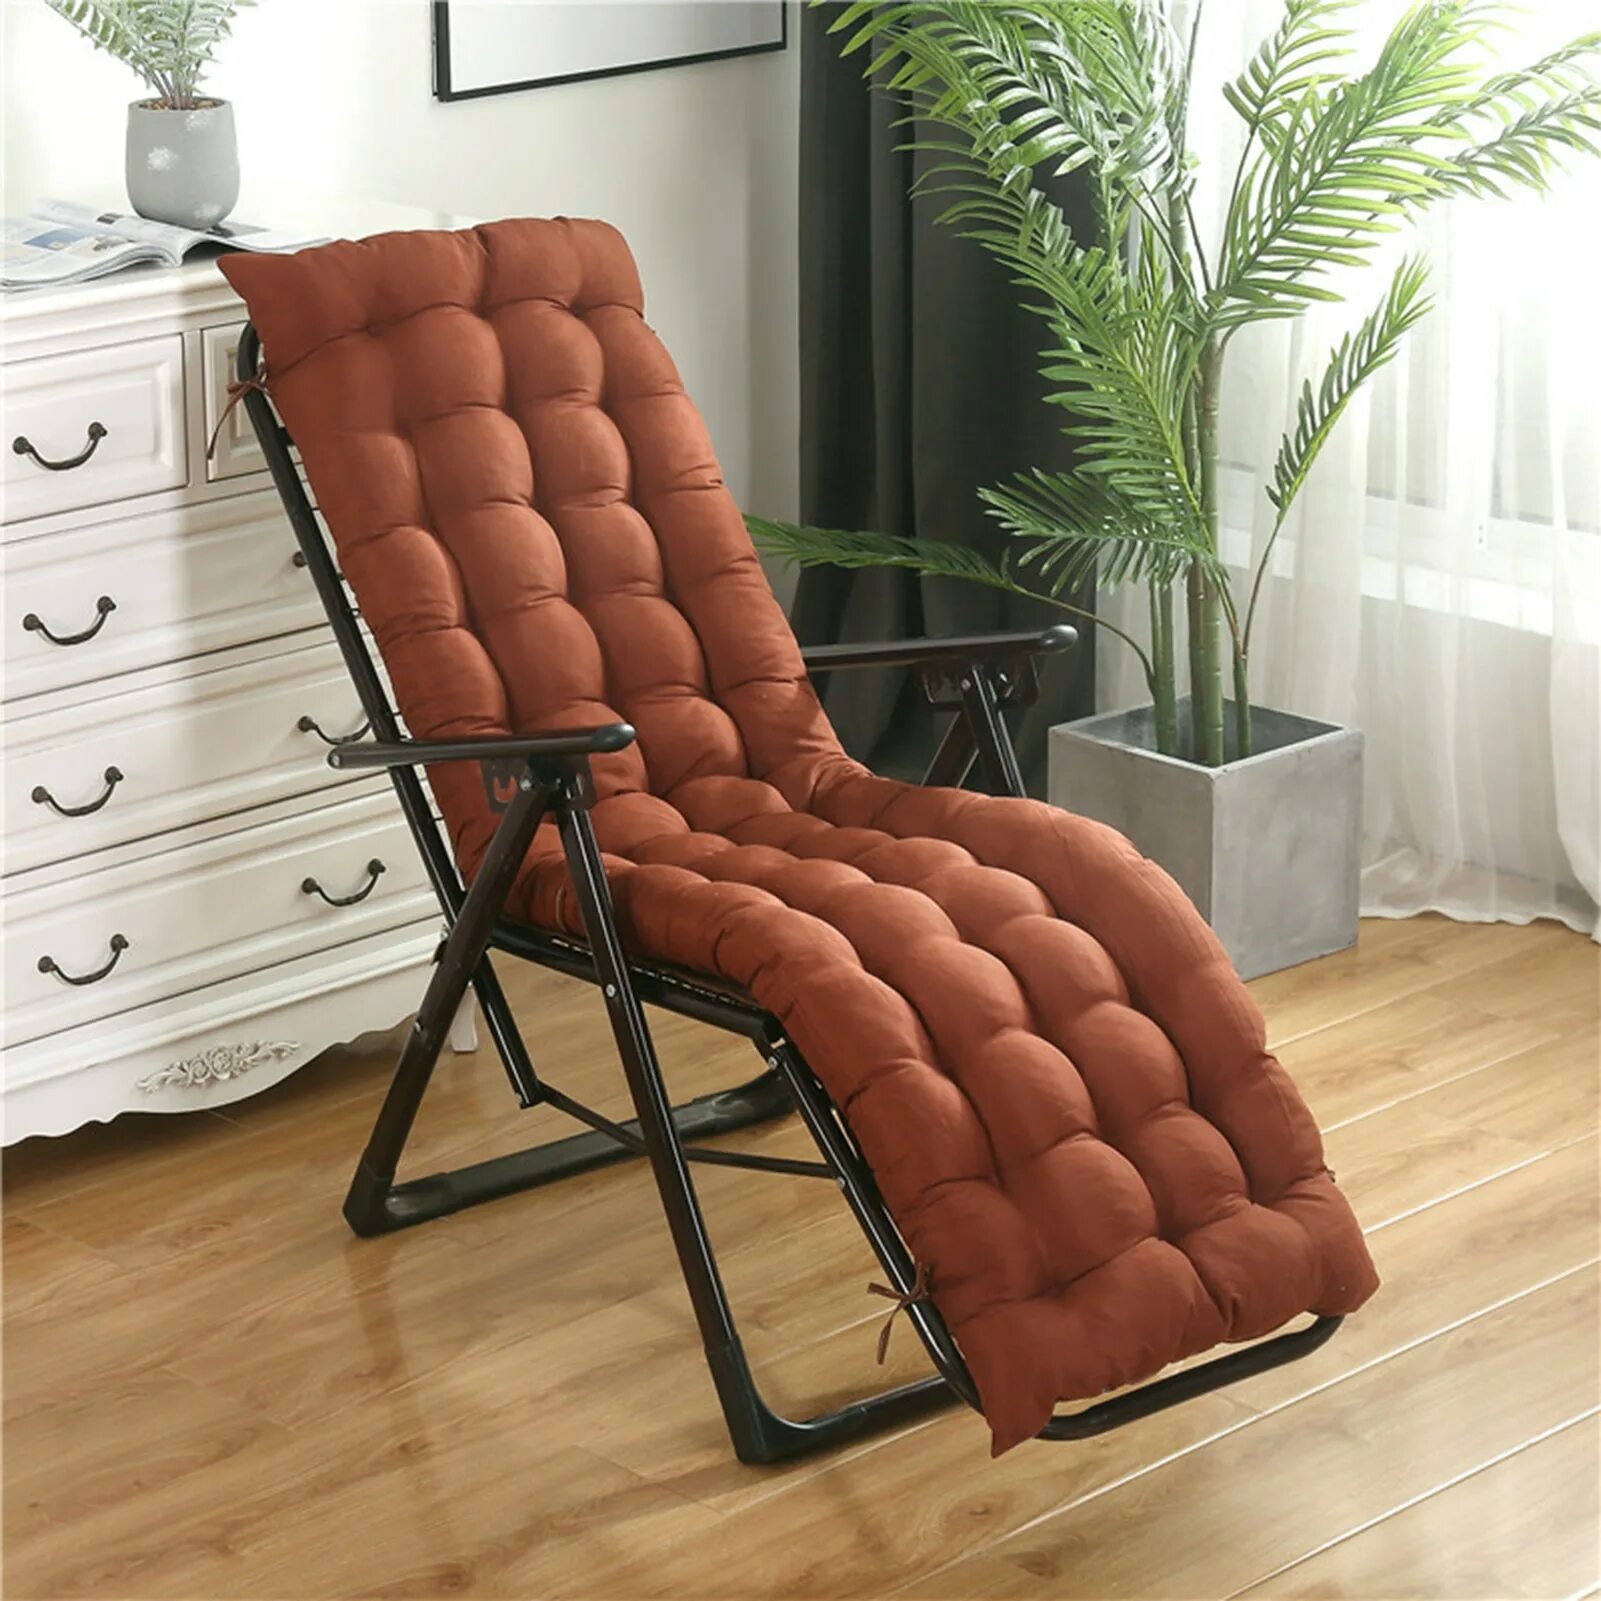 Купить кресло алиэкспресс. Кресло-качалка с подушкой tg0195c. Мягкое кресло лежак. Шезлонг мягкий. Кресло для релакса.